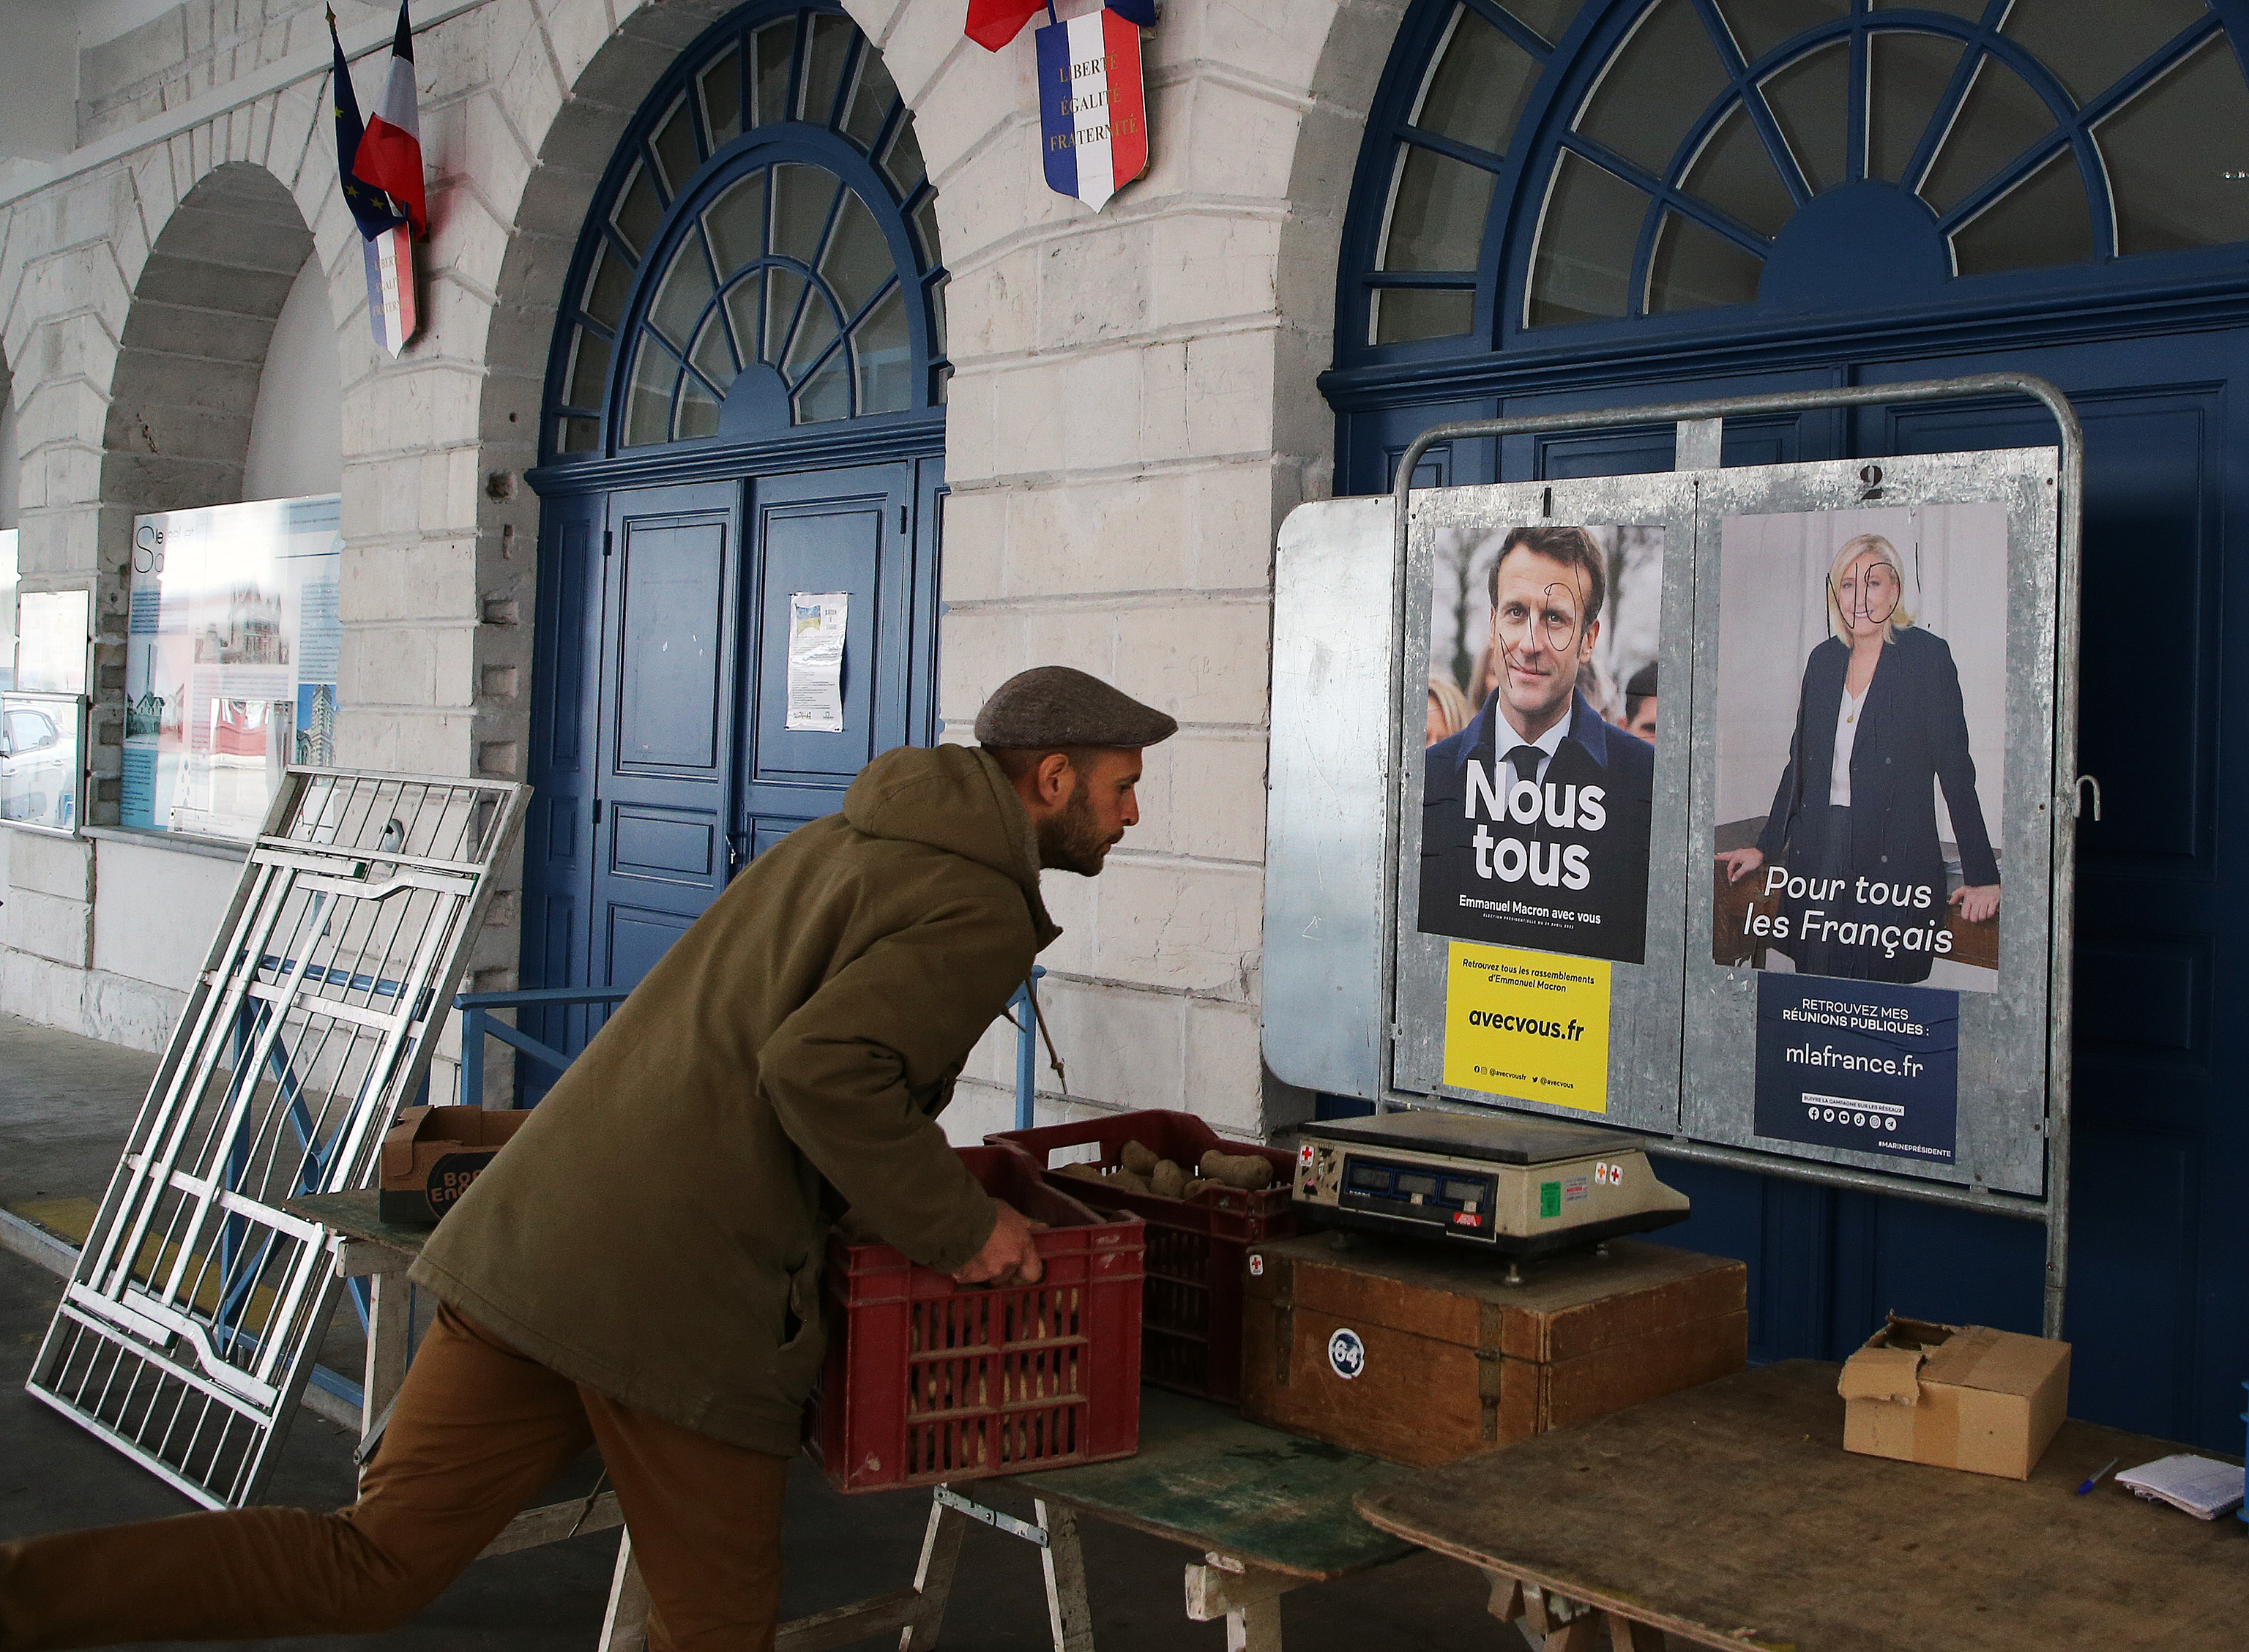 Preparacin de una mesa electoral en el suroeste de Francia este sbado